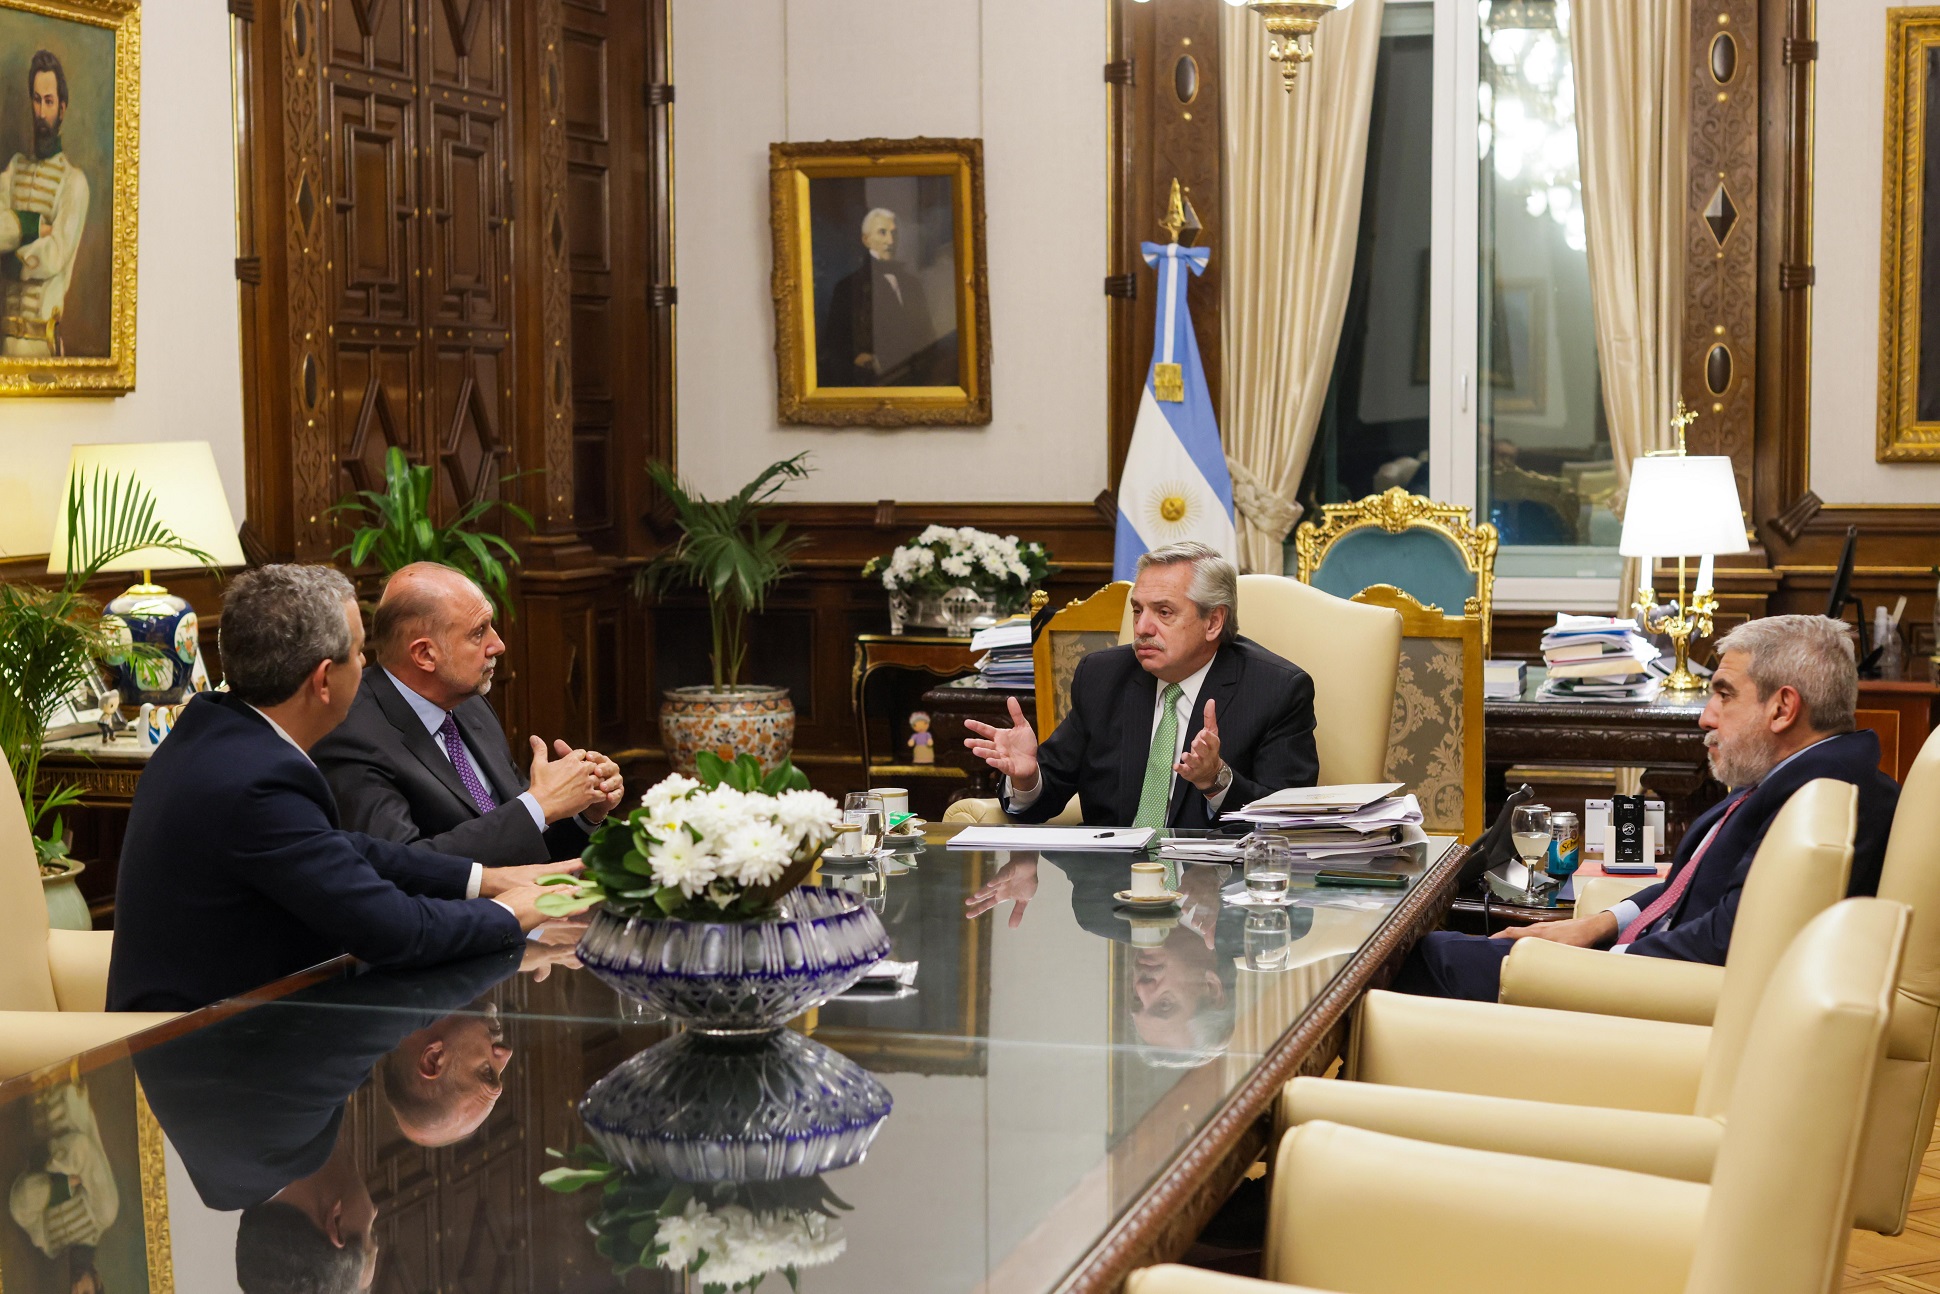 El presidente se comprometió a reforzar la seguridad de Rosario durante un encuentro con el gobernador Perotti y el intendente Javkin